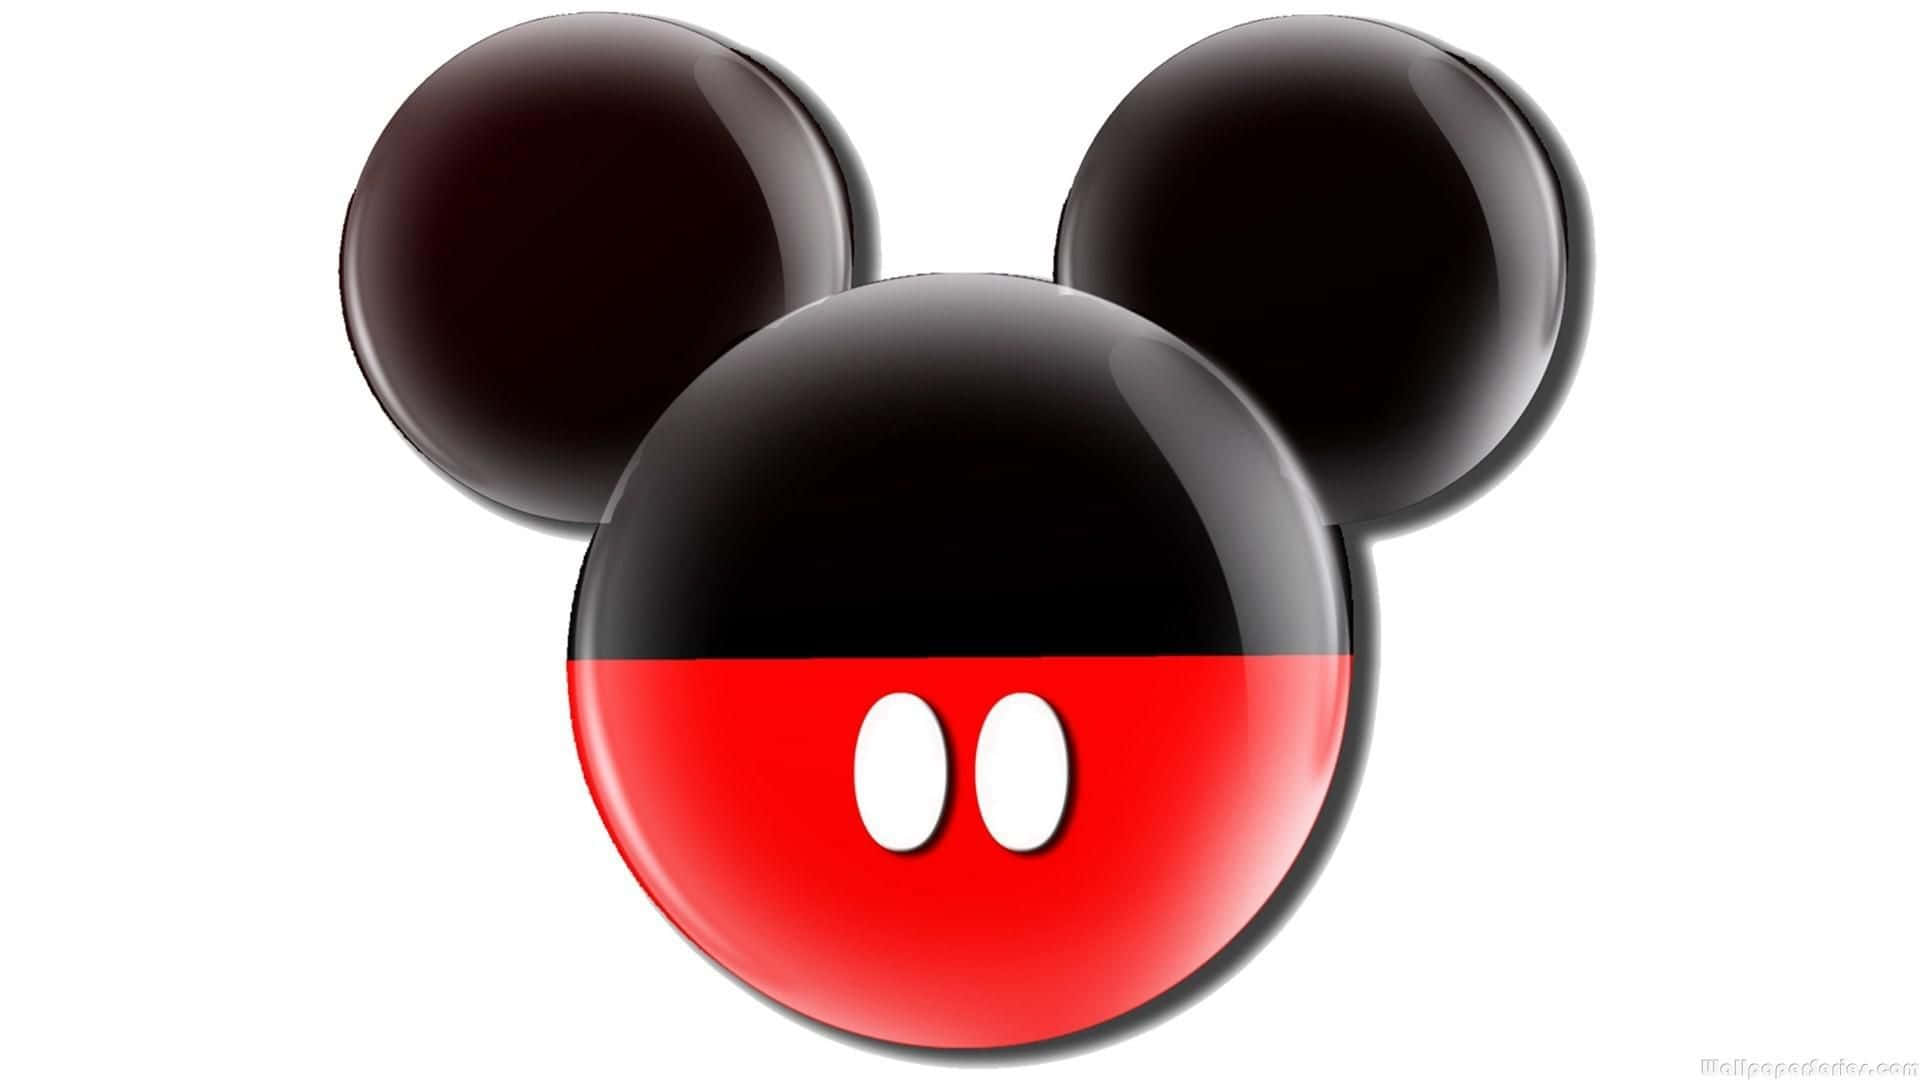 Enbild På Det Klassiska Mickey Mouse-öronparet. Wallpaper